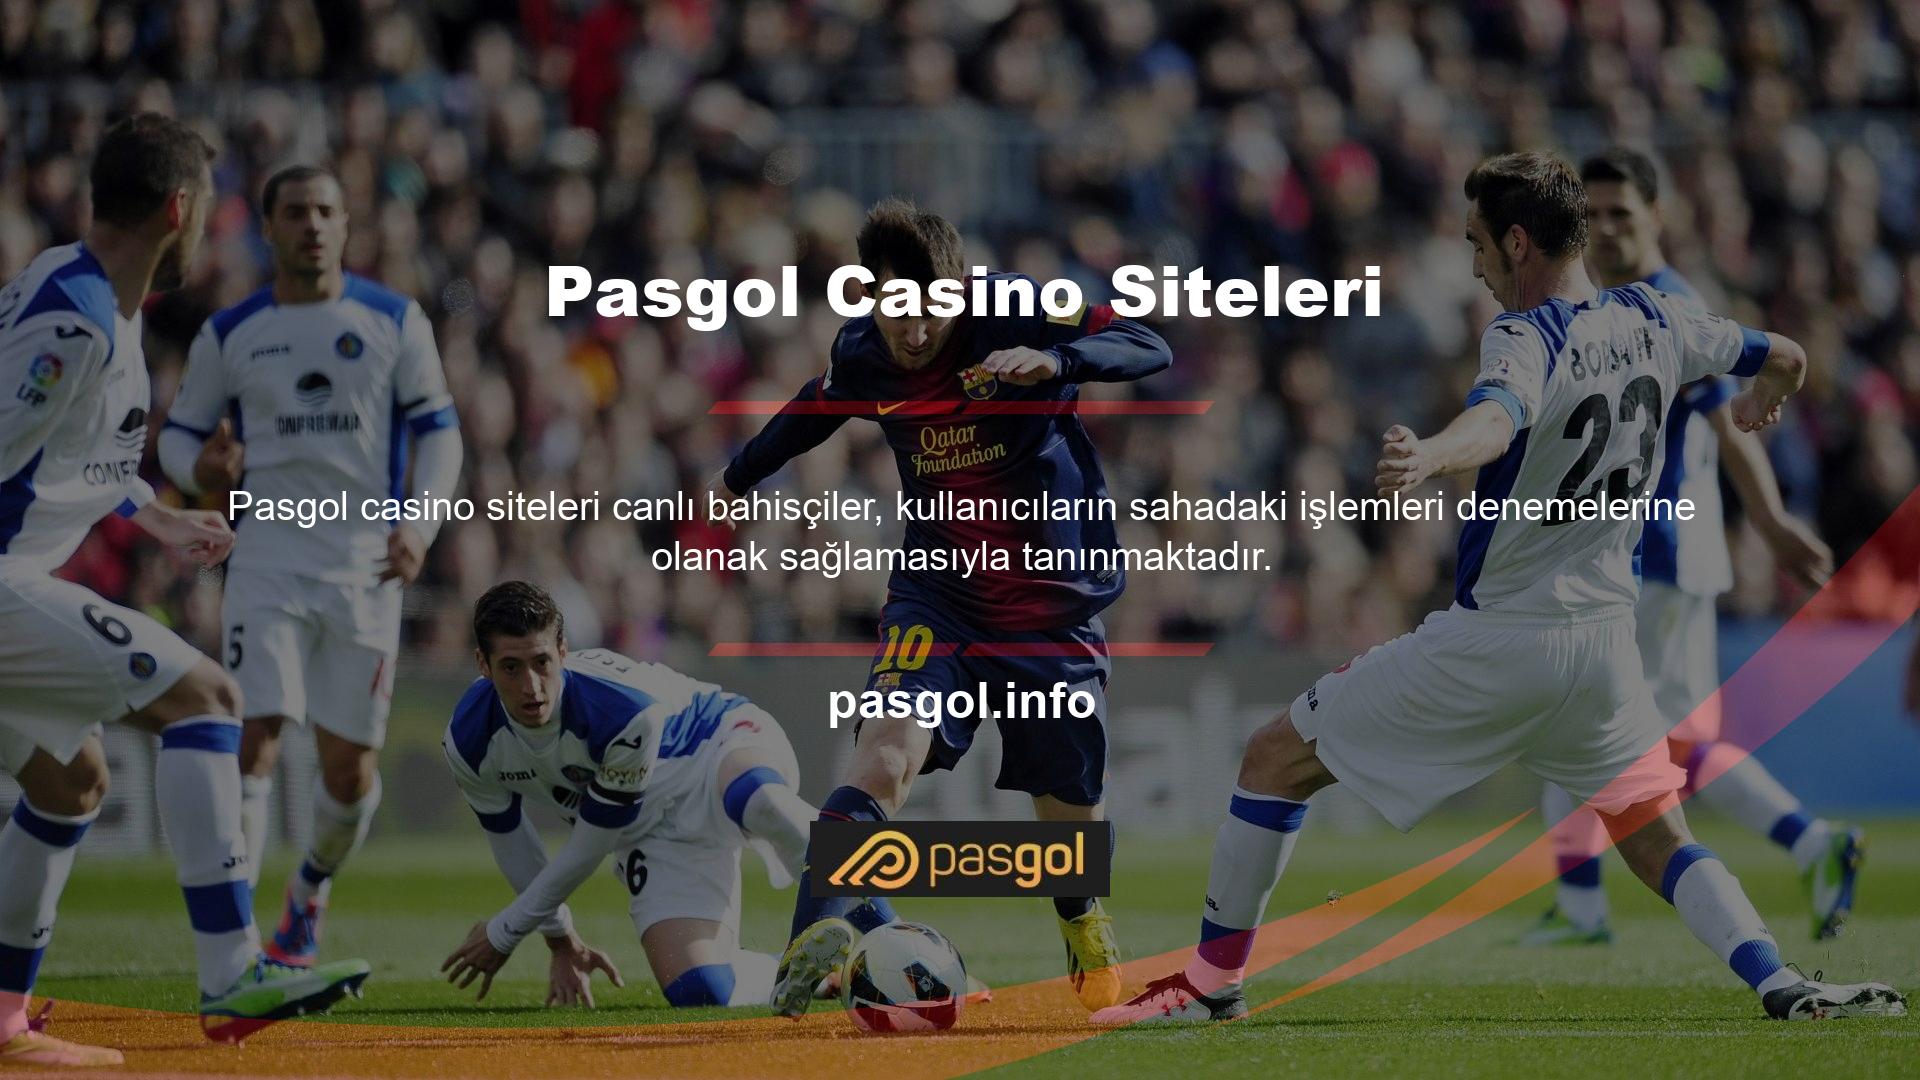 Pasgol kullanıcı dostu olma ve içerik kalitesi gibi önemli alanlarda hedefler belirlemiştir Spor bahisleri ve casino oyun etkinliklerini izleyin